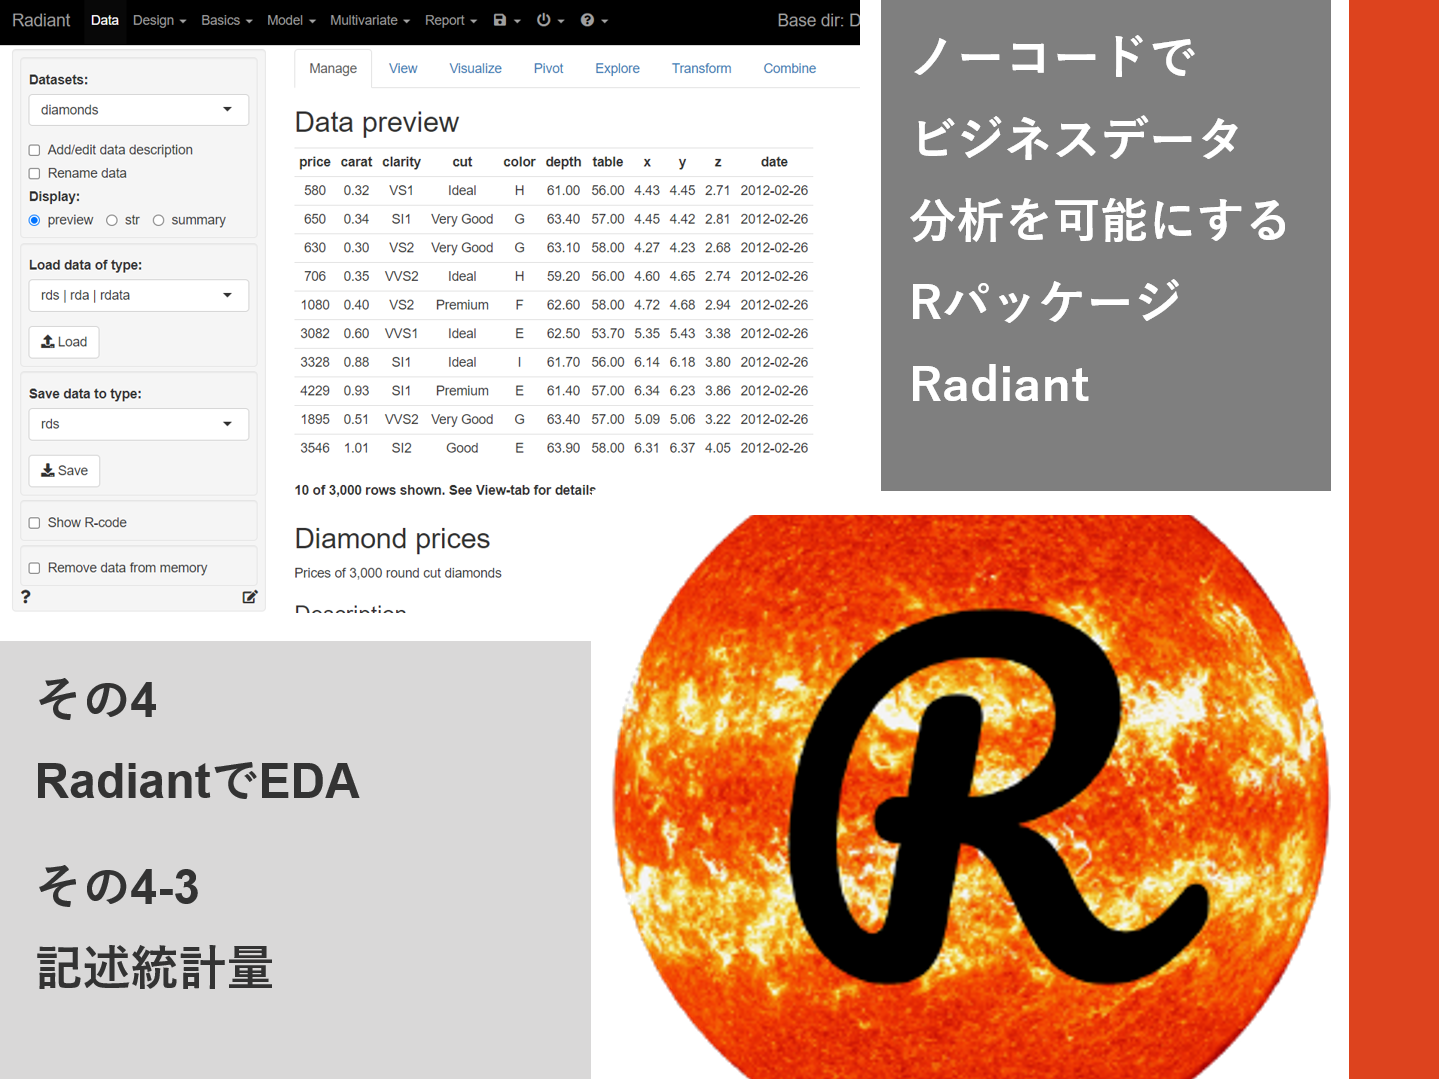 ノーコードでビジネスデータ分析を可能にするRパッケージRadiantその4-3（RadiantでEDA – 記述統計量）